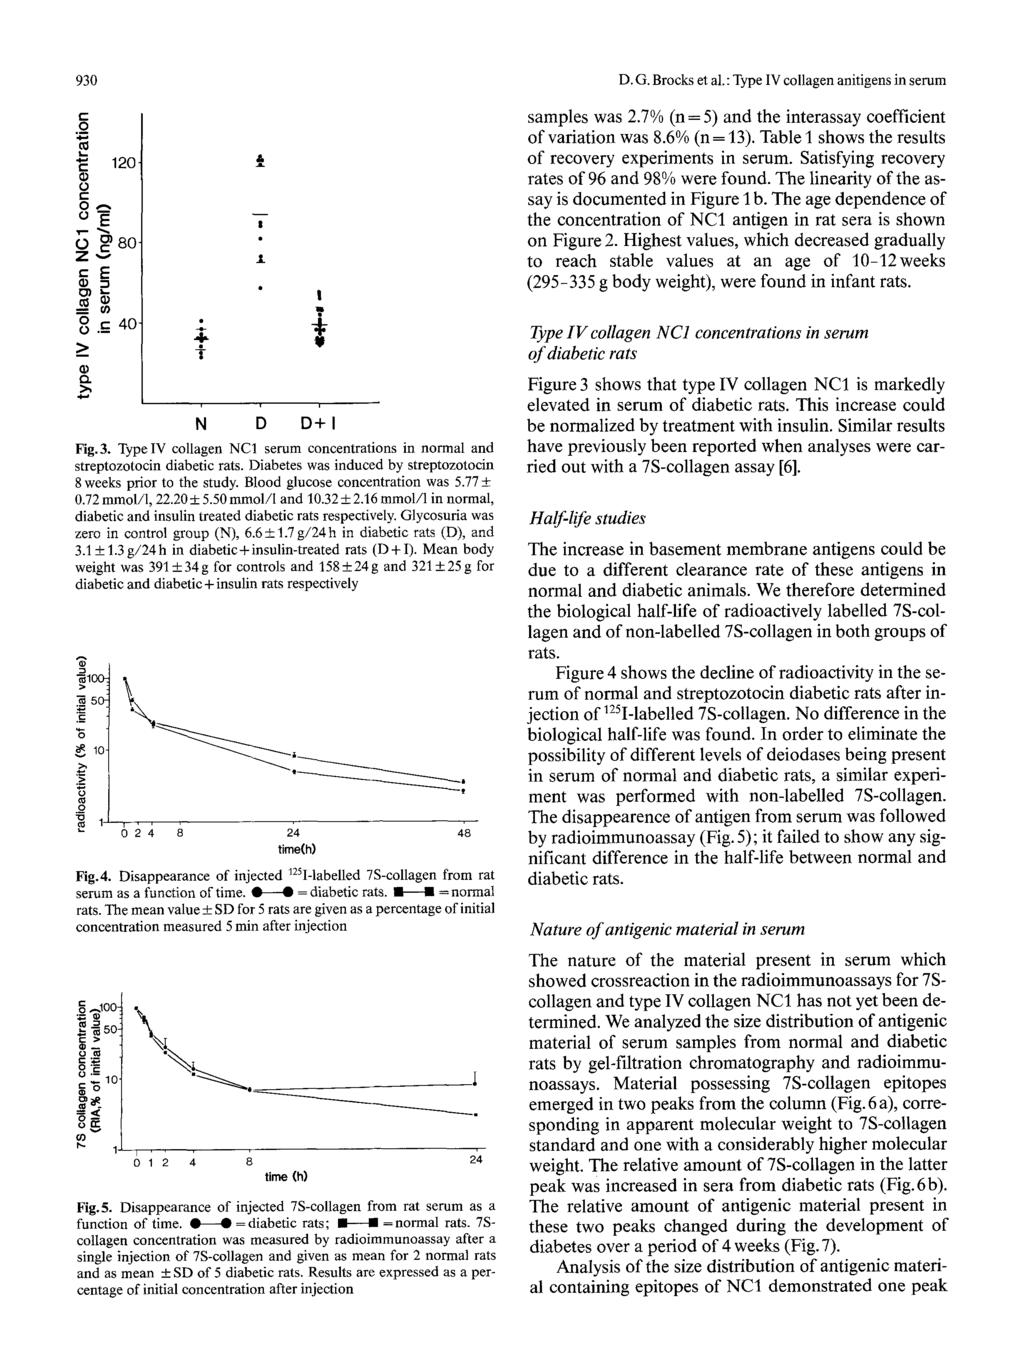 93 D. G. Brcks et al.: Type IV cllagen anitigens in serum r._ ~-,,, 12-8- Z! T.1. samples was 2.7% (n = 5) and the interassay cefficient f variatin was 8.6% (n = 13).